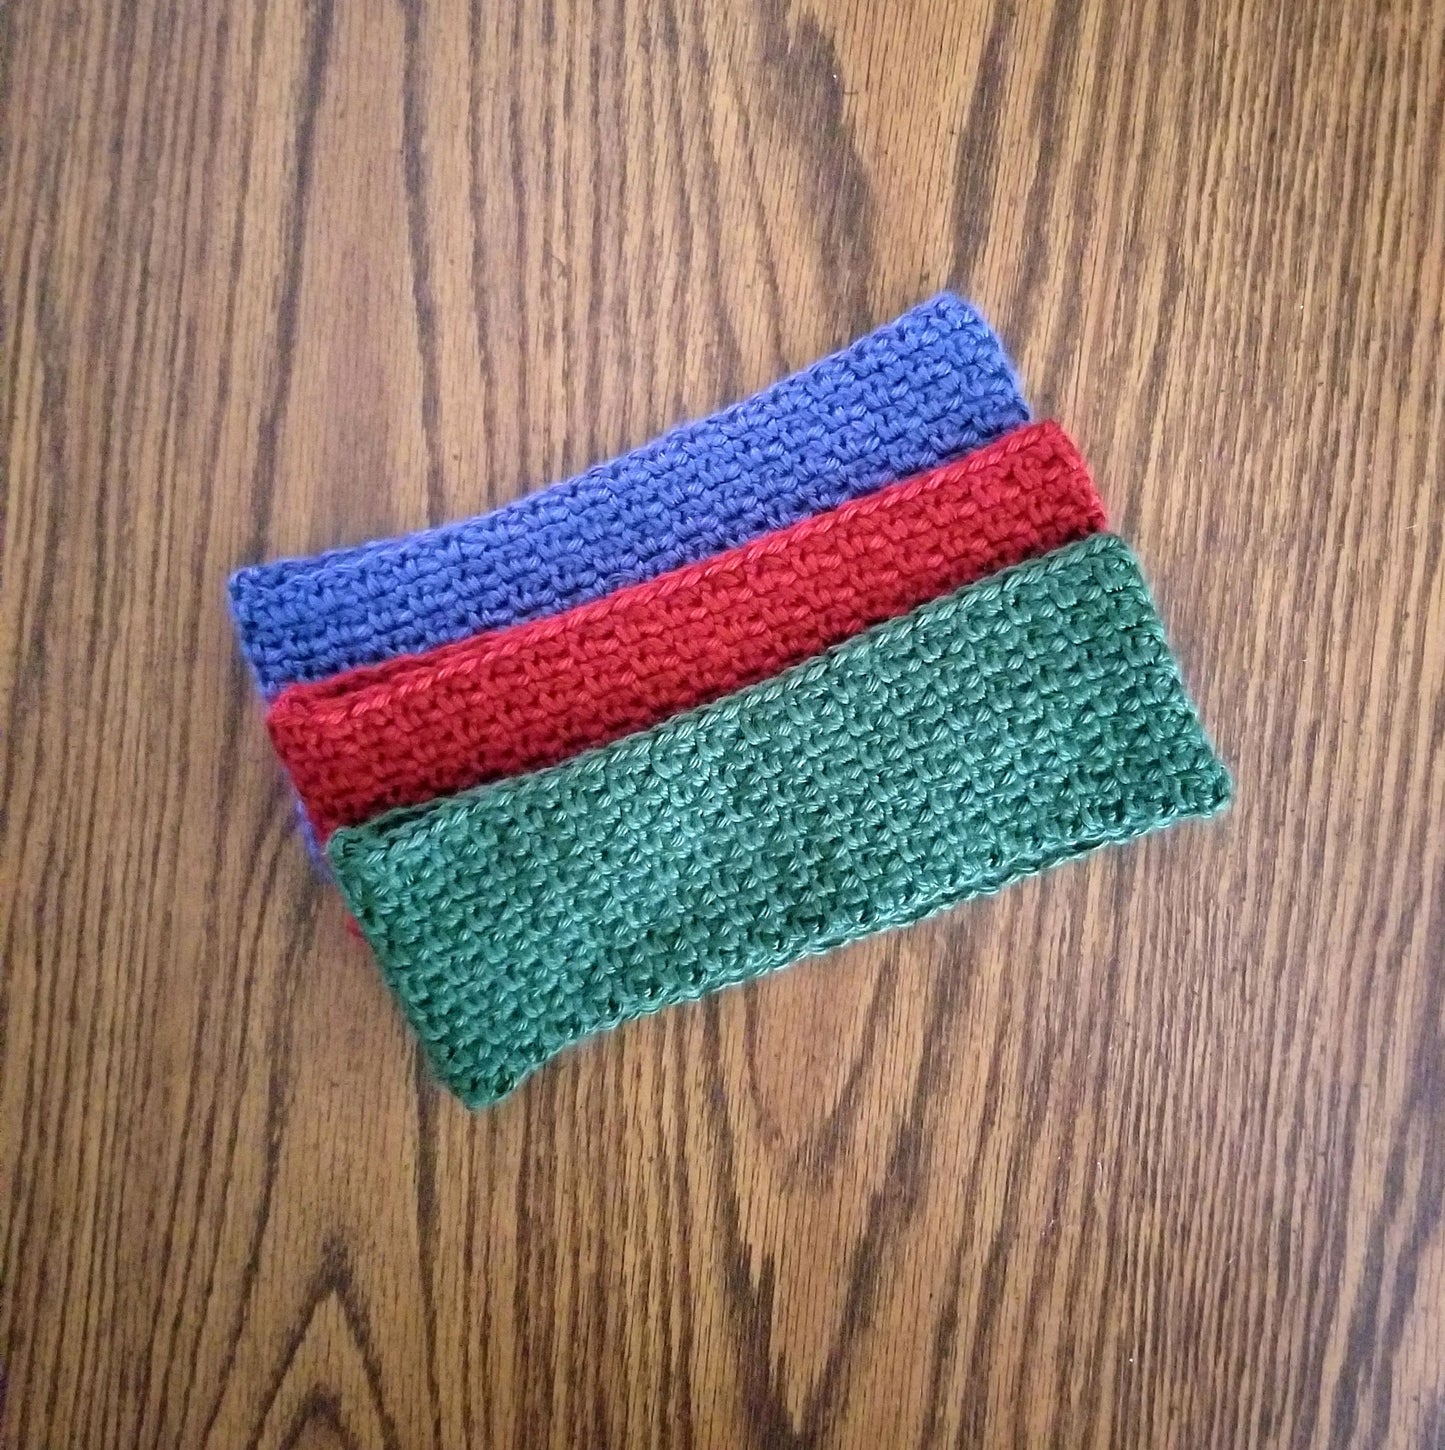 Woven Earwarmer Crochet Pattern PDF